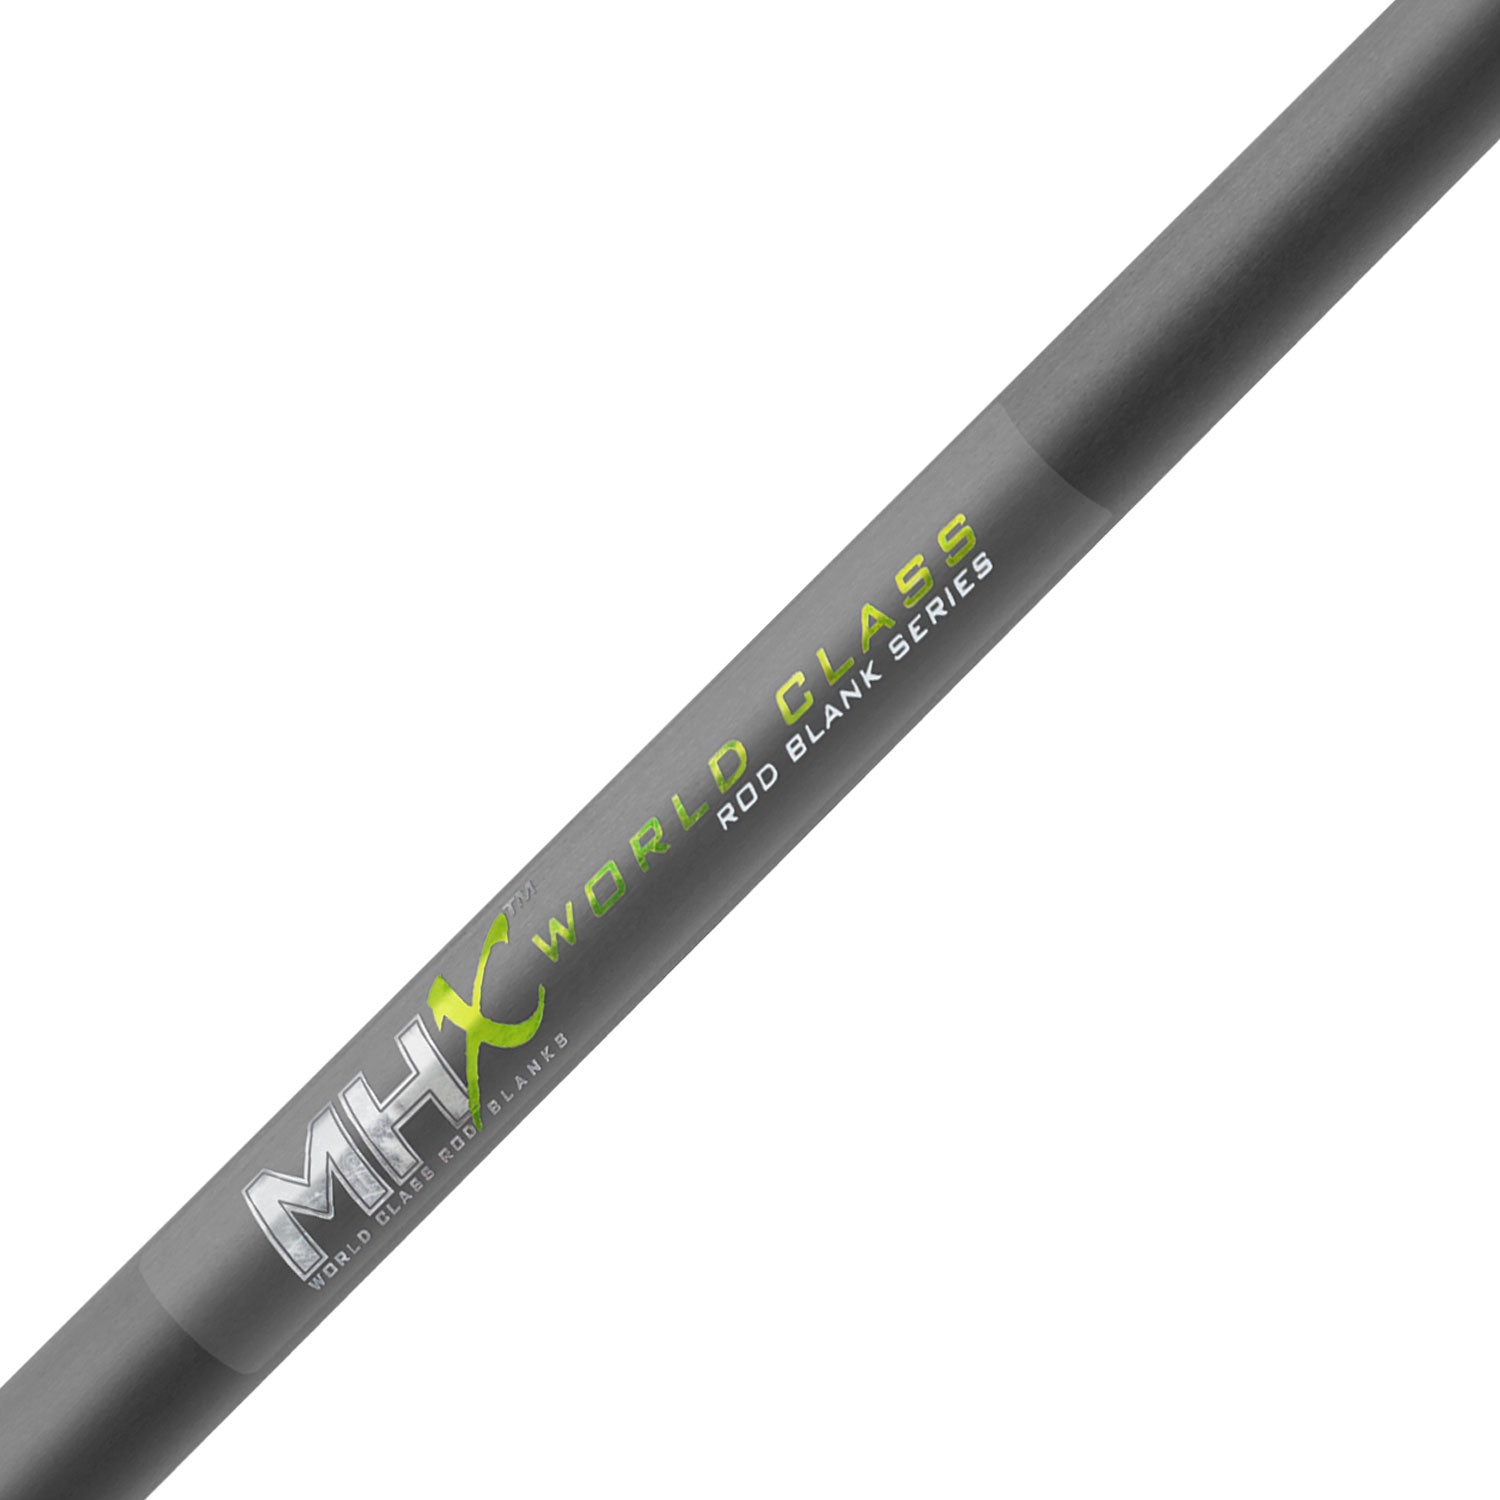 MHX 7'0 Med-Light Crankbait Rod Blank - CB841-Blend